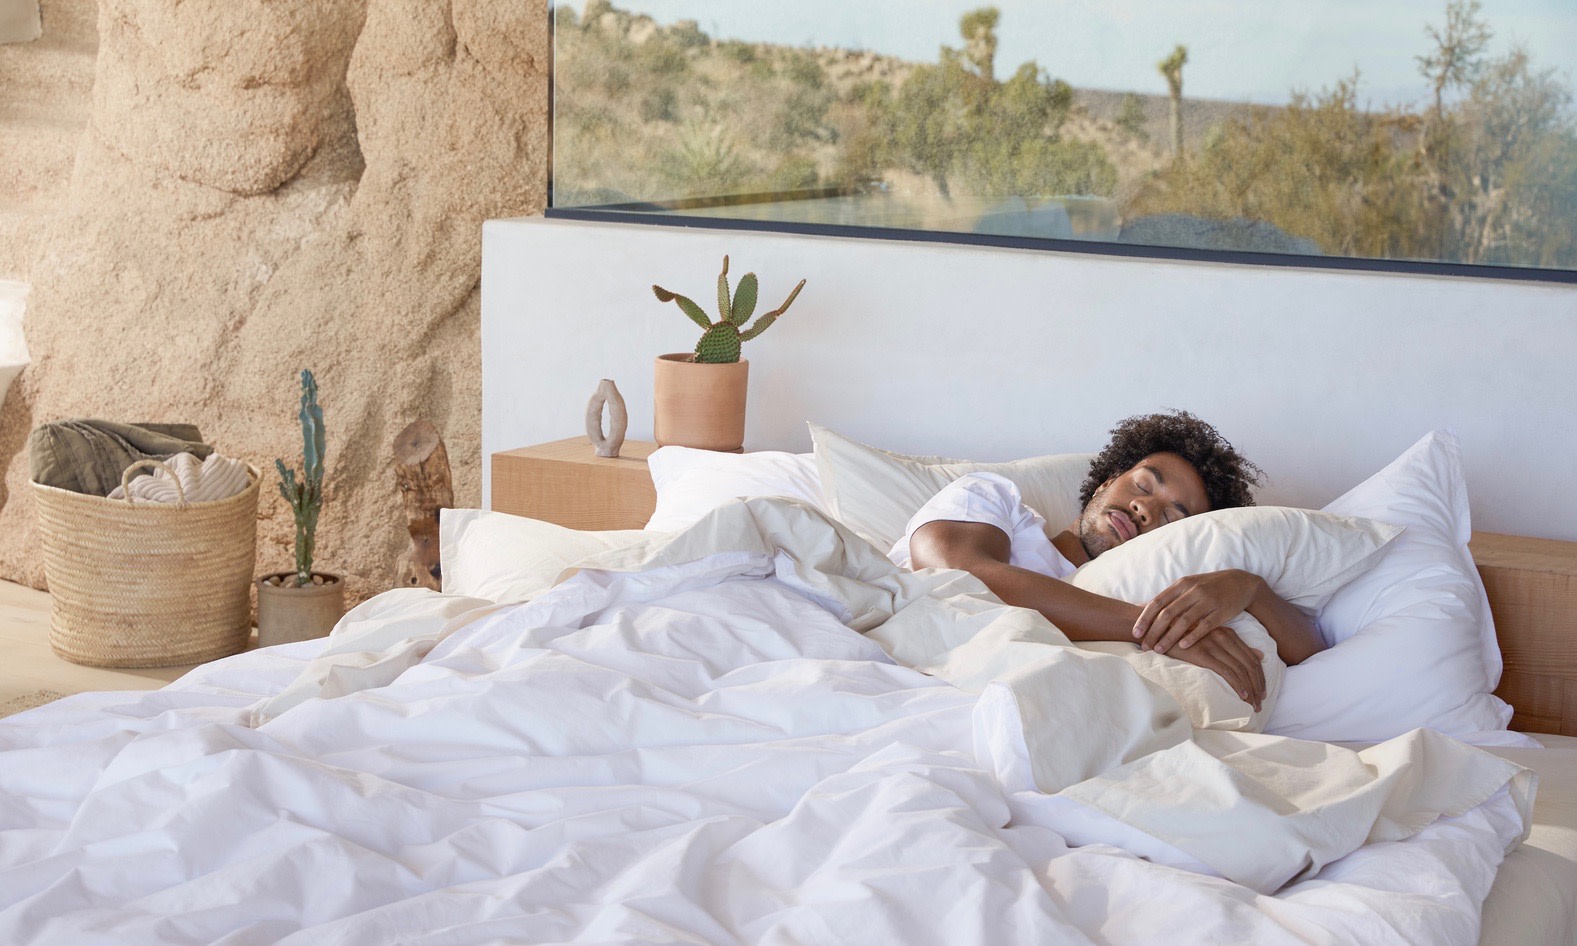 White bedding in the desert 